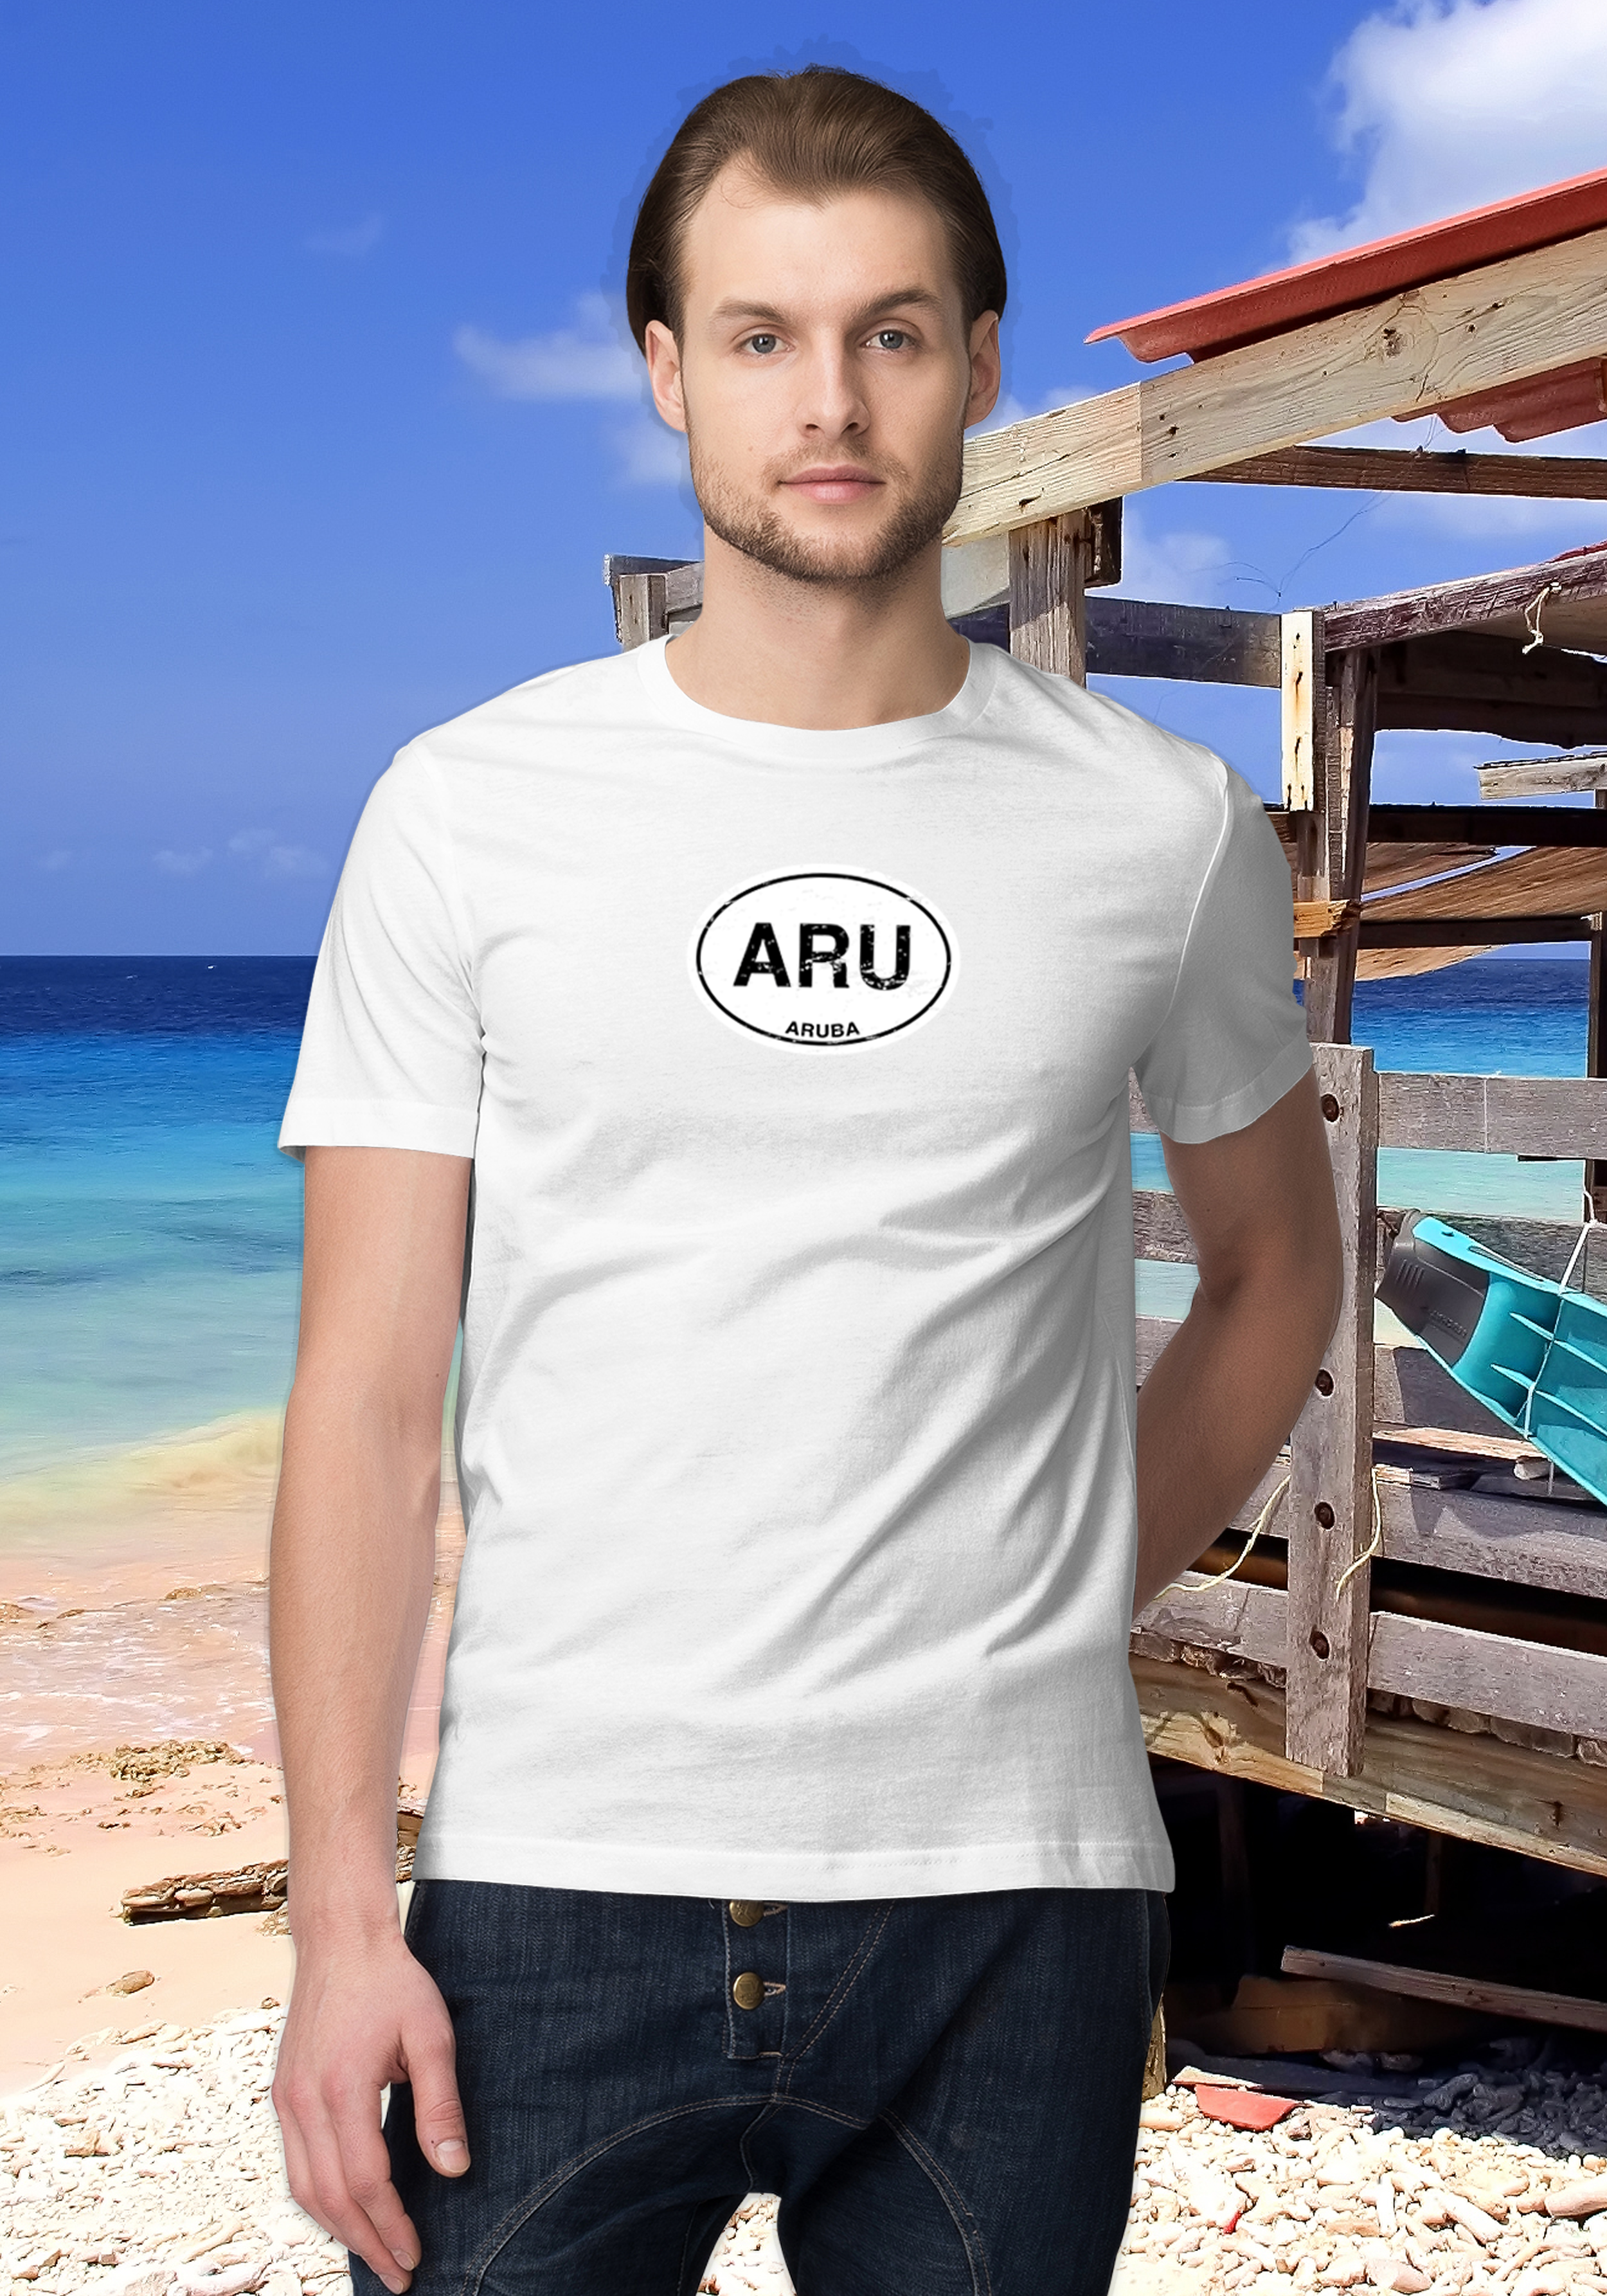 Aruba Men's Classic T-Shirt Souvenirs - My Destination Location